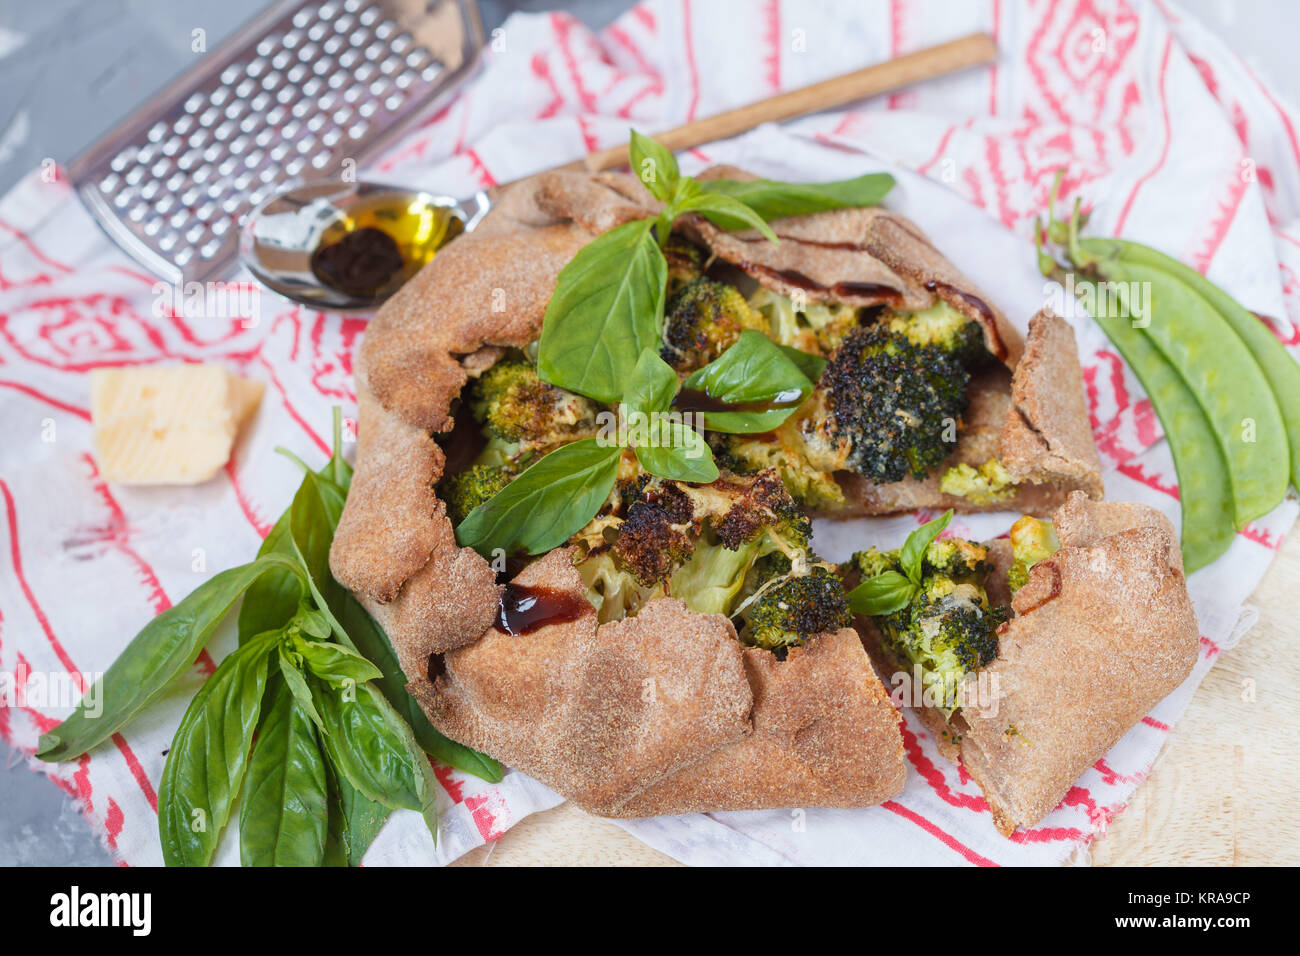 Vegetarische Crostata oder Galette mit Brokkoli, Erbsen, Basilikum und Balsamico. Gesunde vegane Ernährung Konzept. Stockfoto